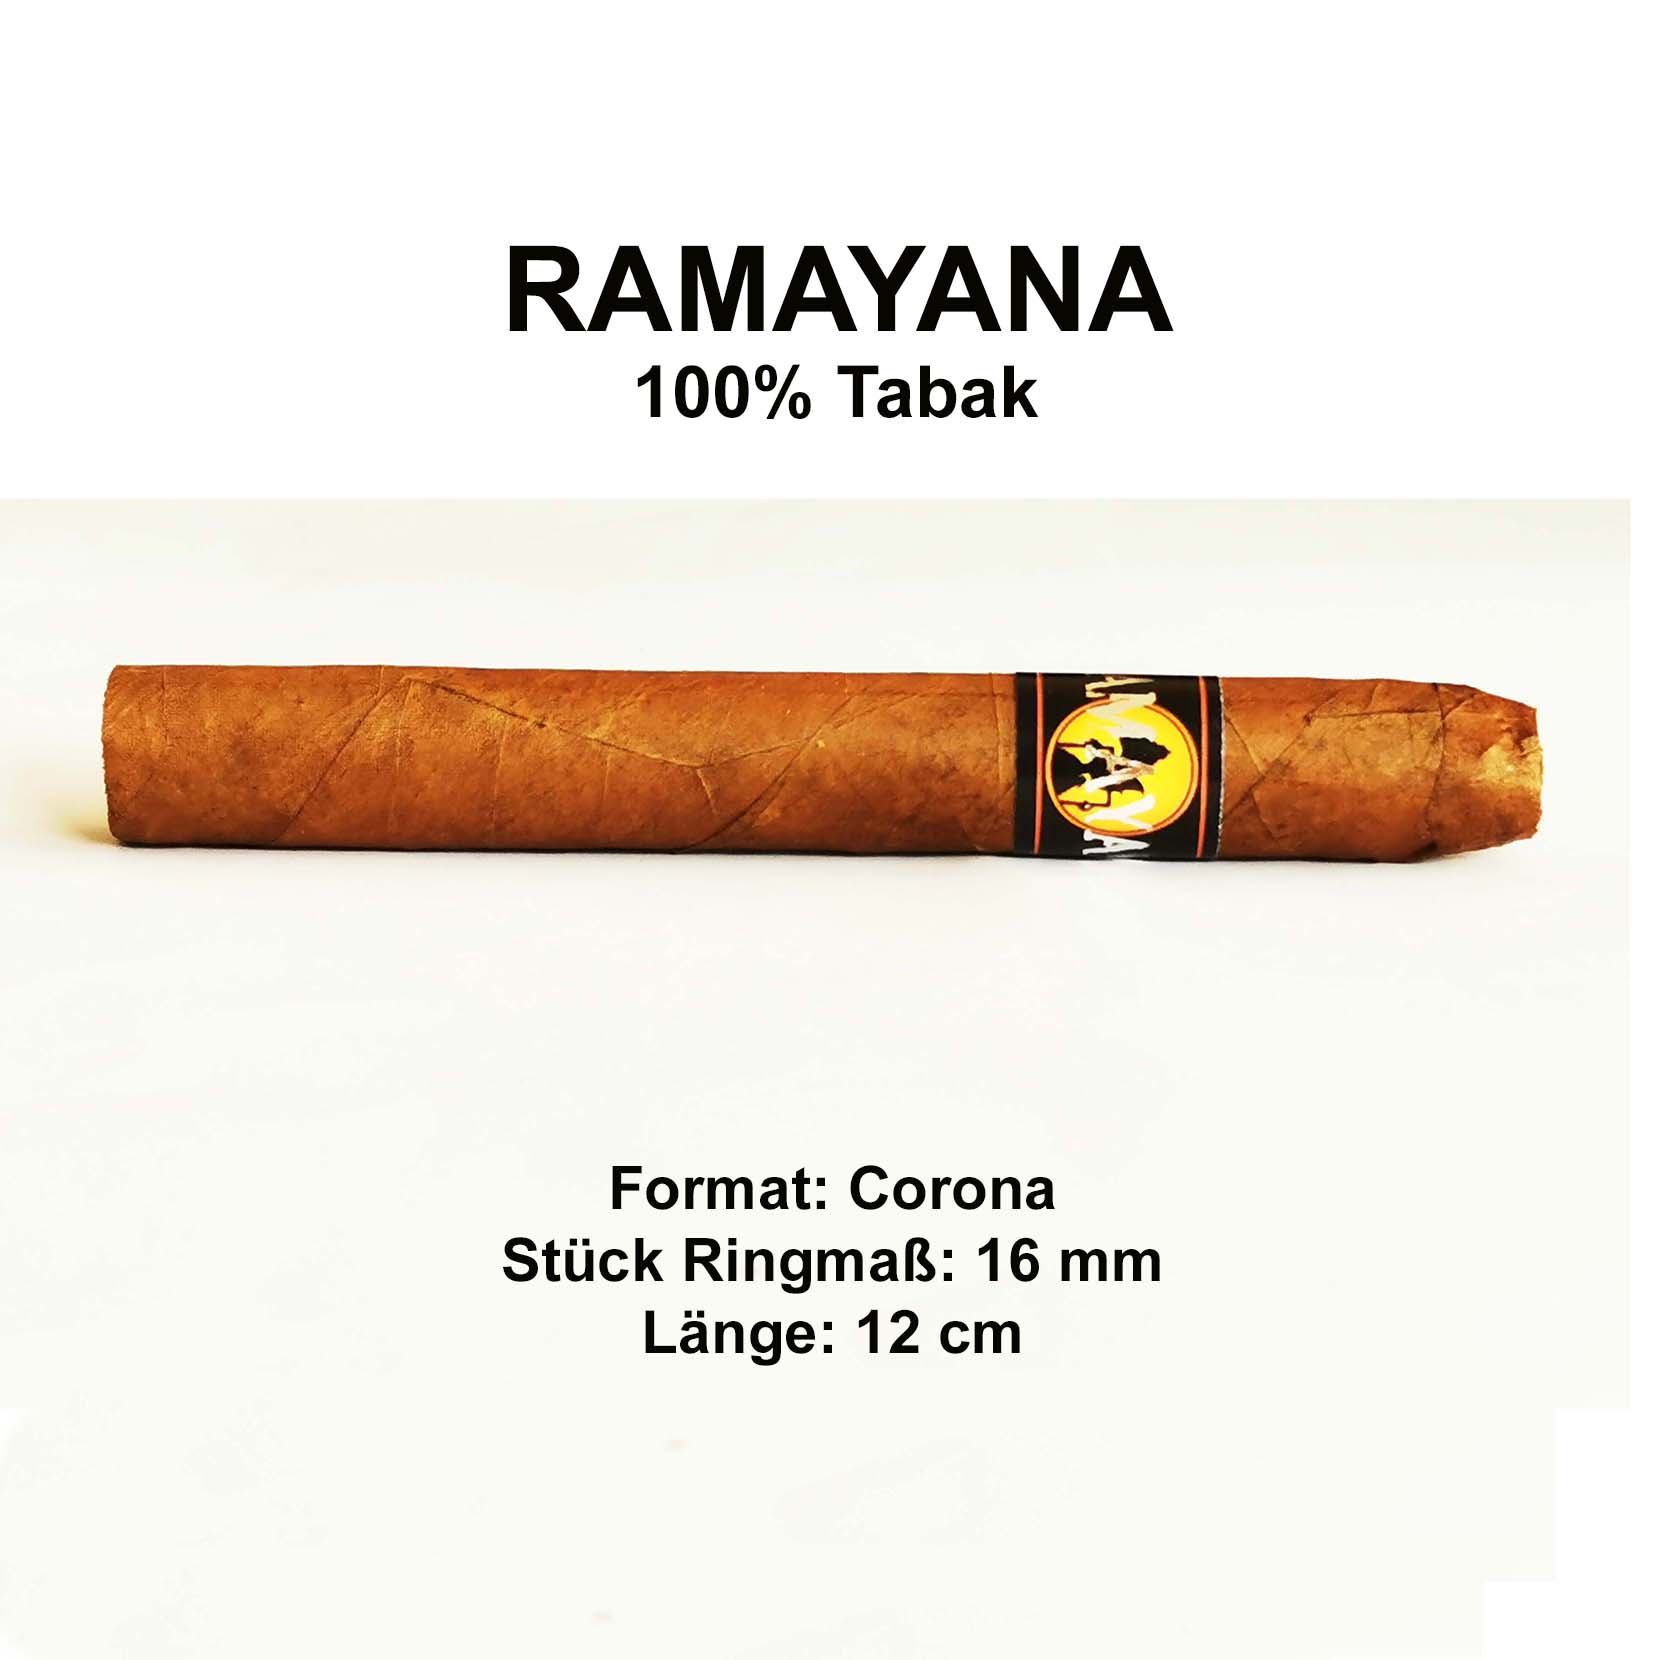 Zigarren Ramayana